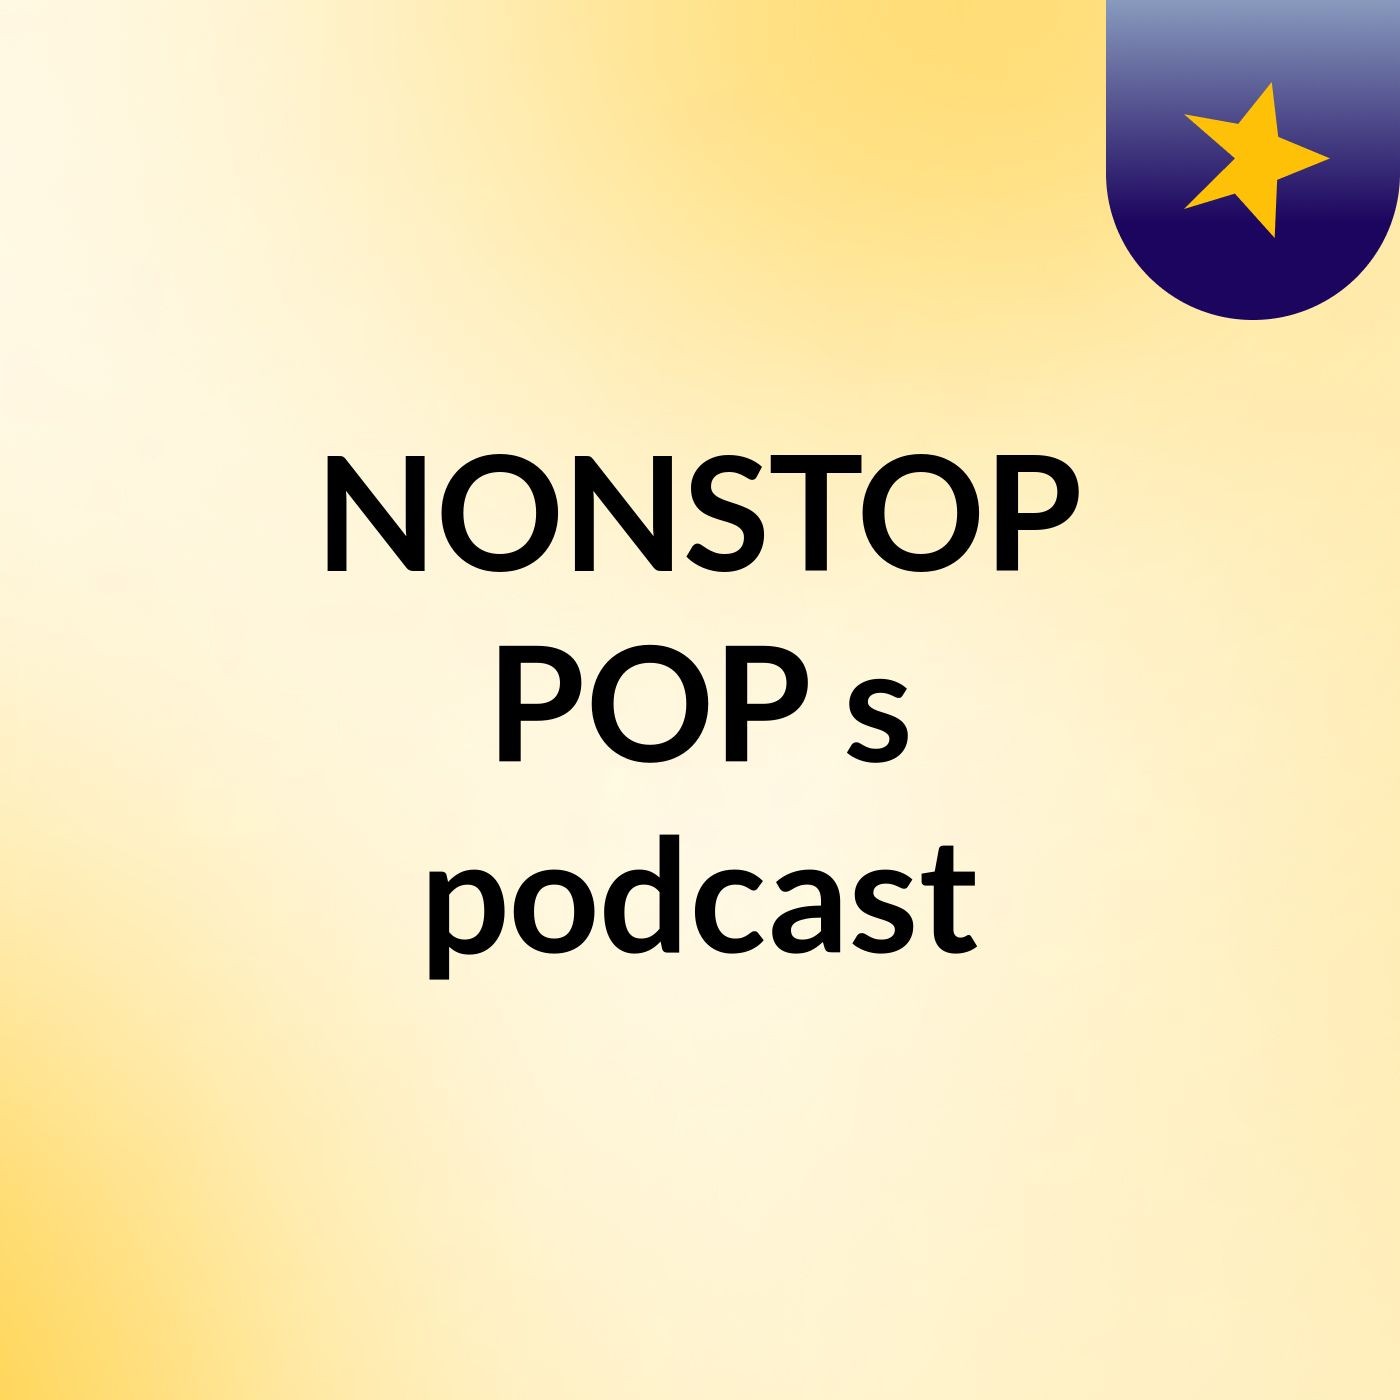 Episode 4 - NONSTOP POP's podcast